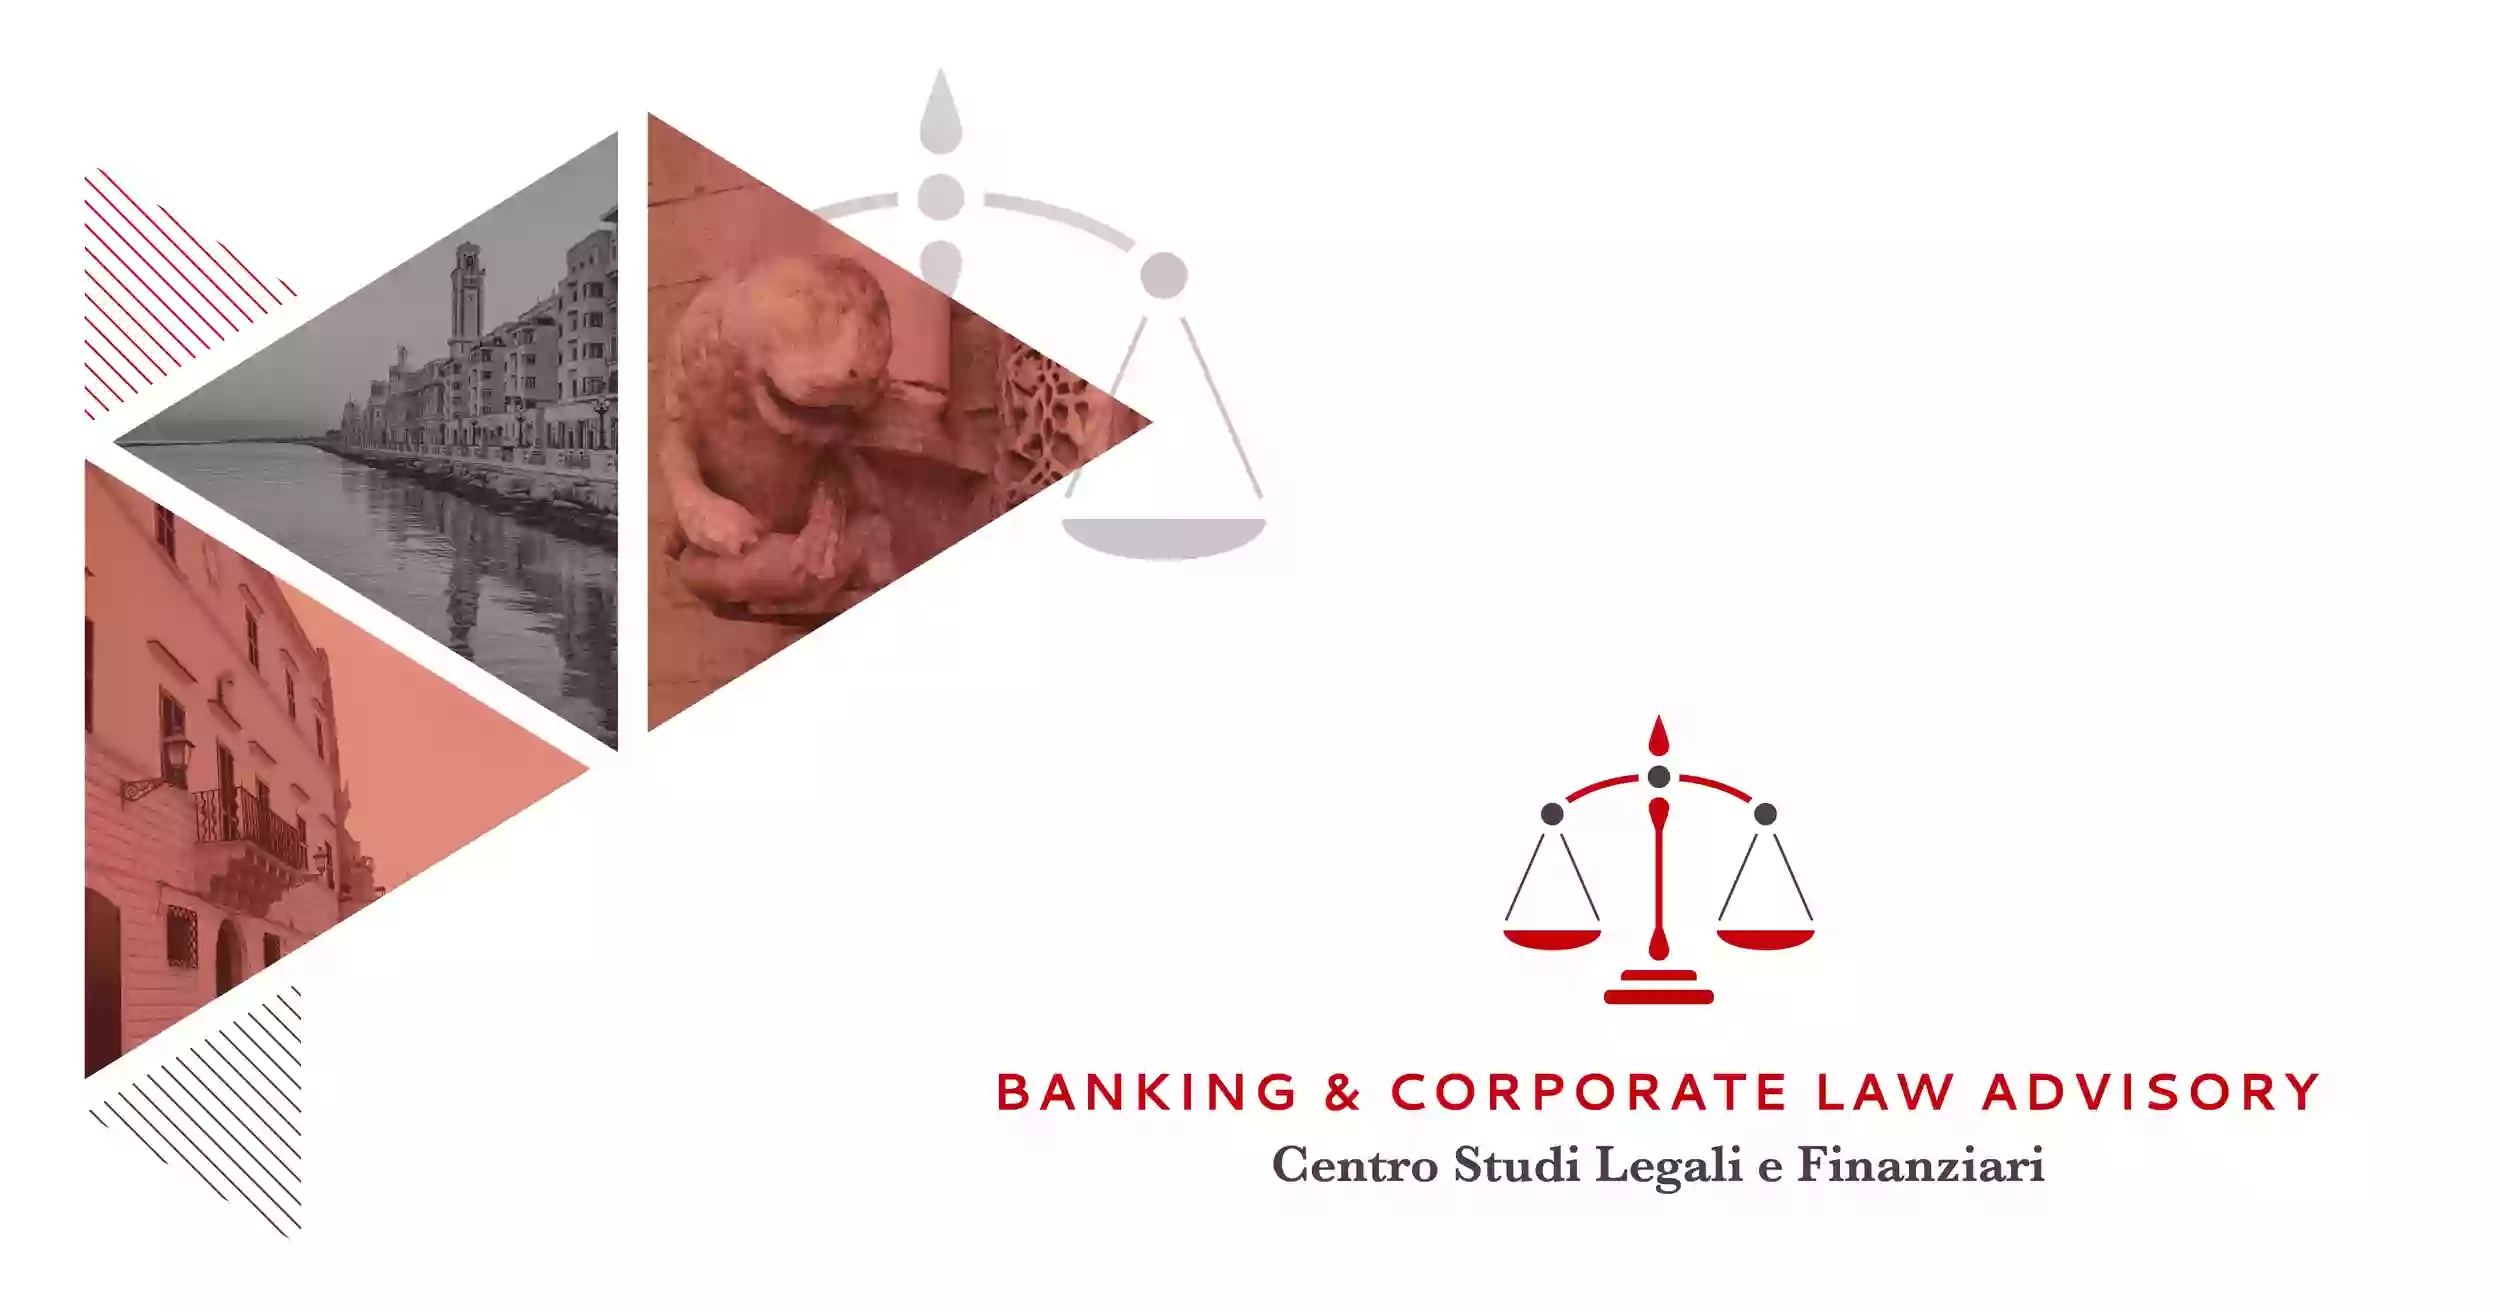 Banking & Corporate Law Advisory - Centro Studi Legali e Finanziari